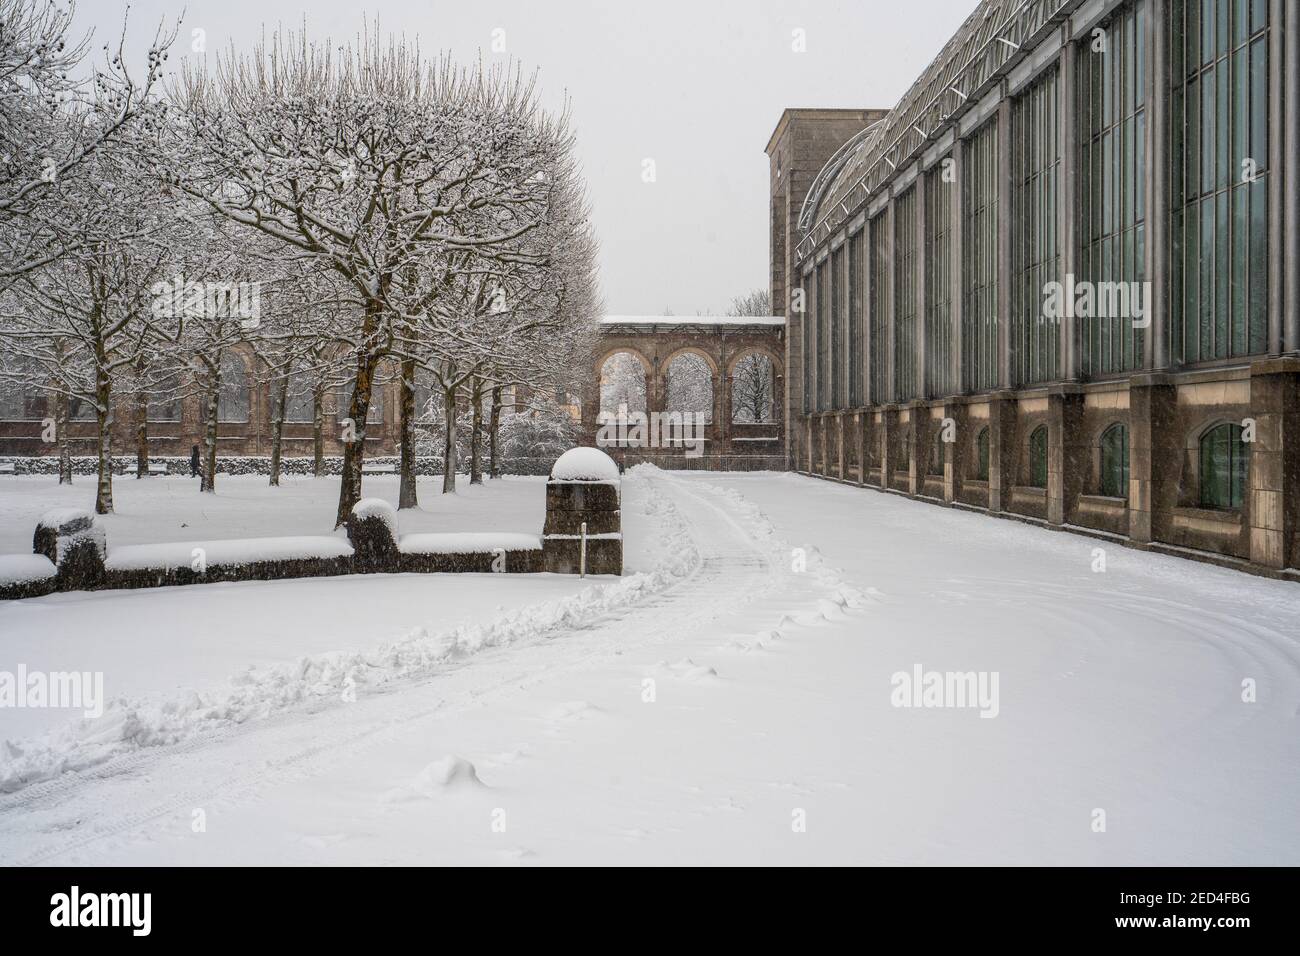 Bayerische Staatskanzlei / Bavarian Government on a snowy Day, Munich Stock Photo